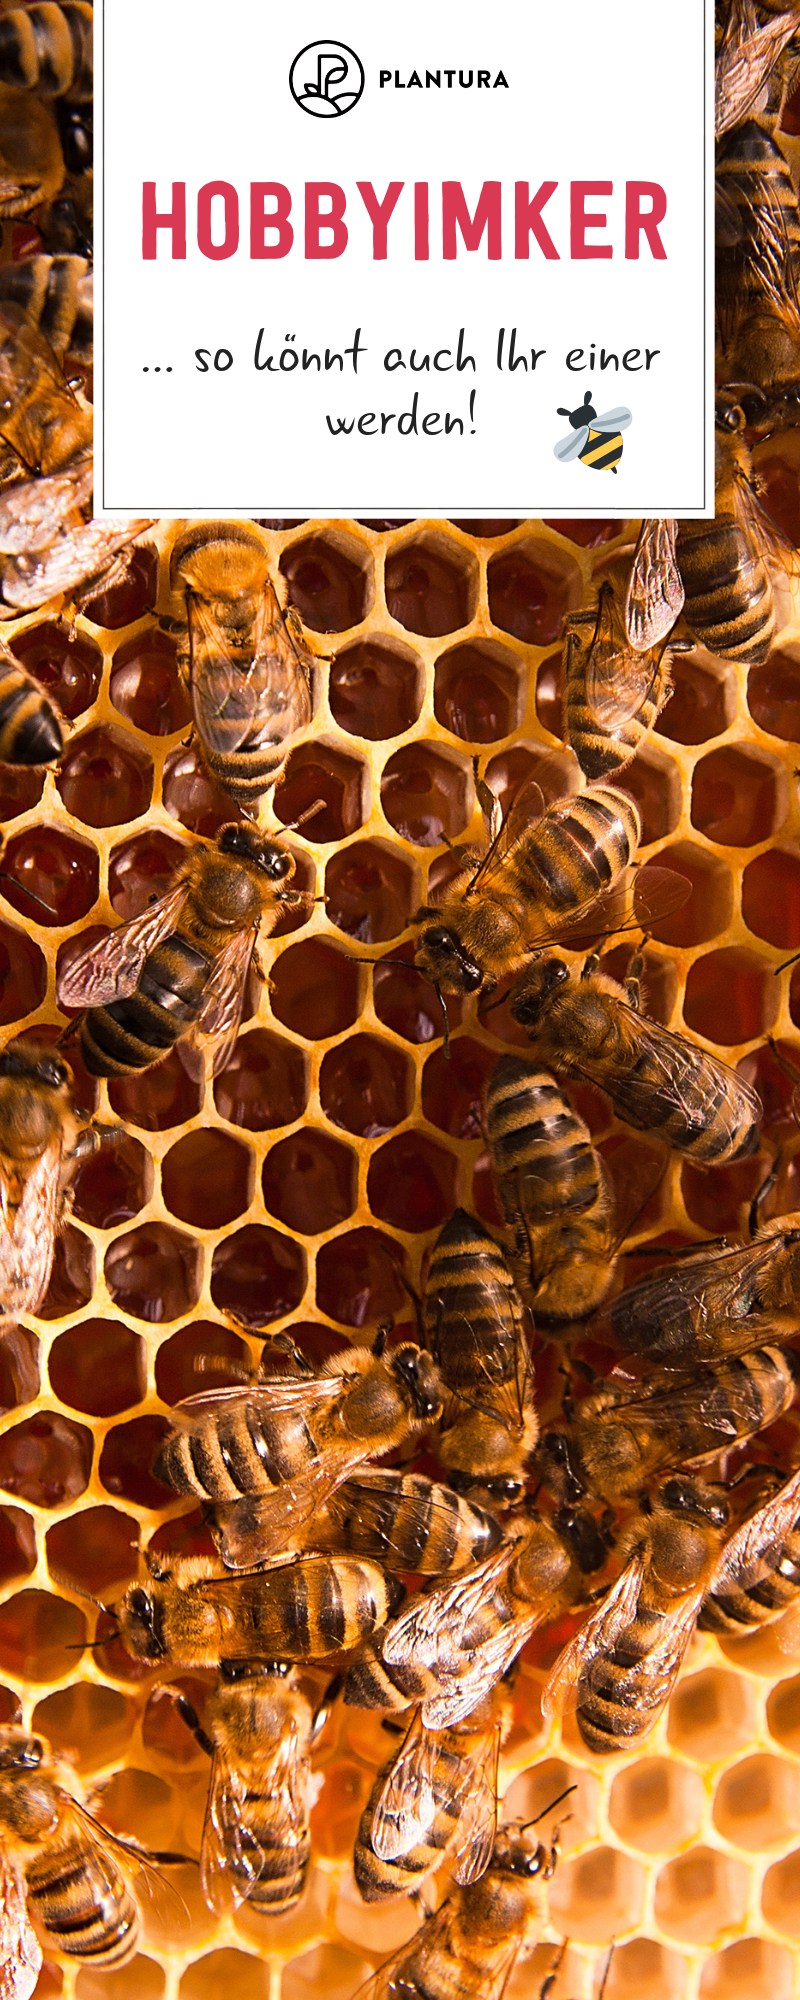 Bienenvolk Im Garten Einzigartig Die 67 Besten Bilder Von Bienen Bee Happy